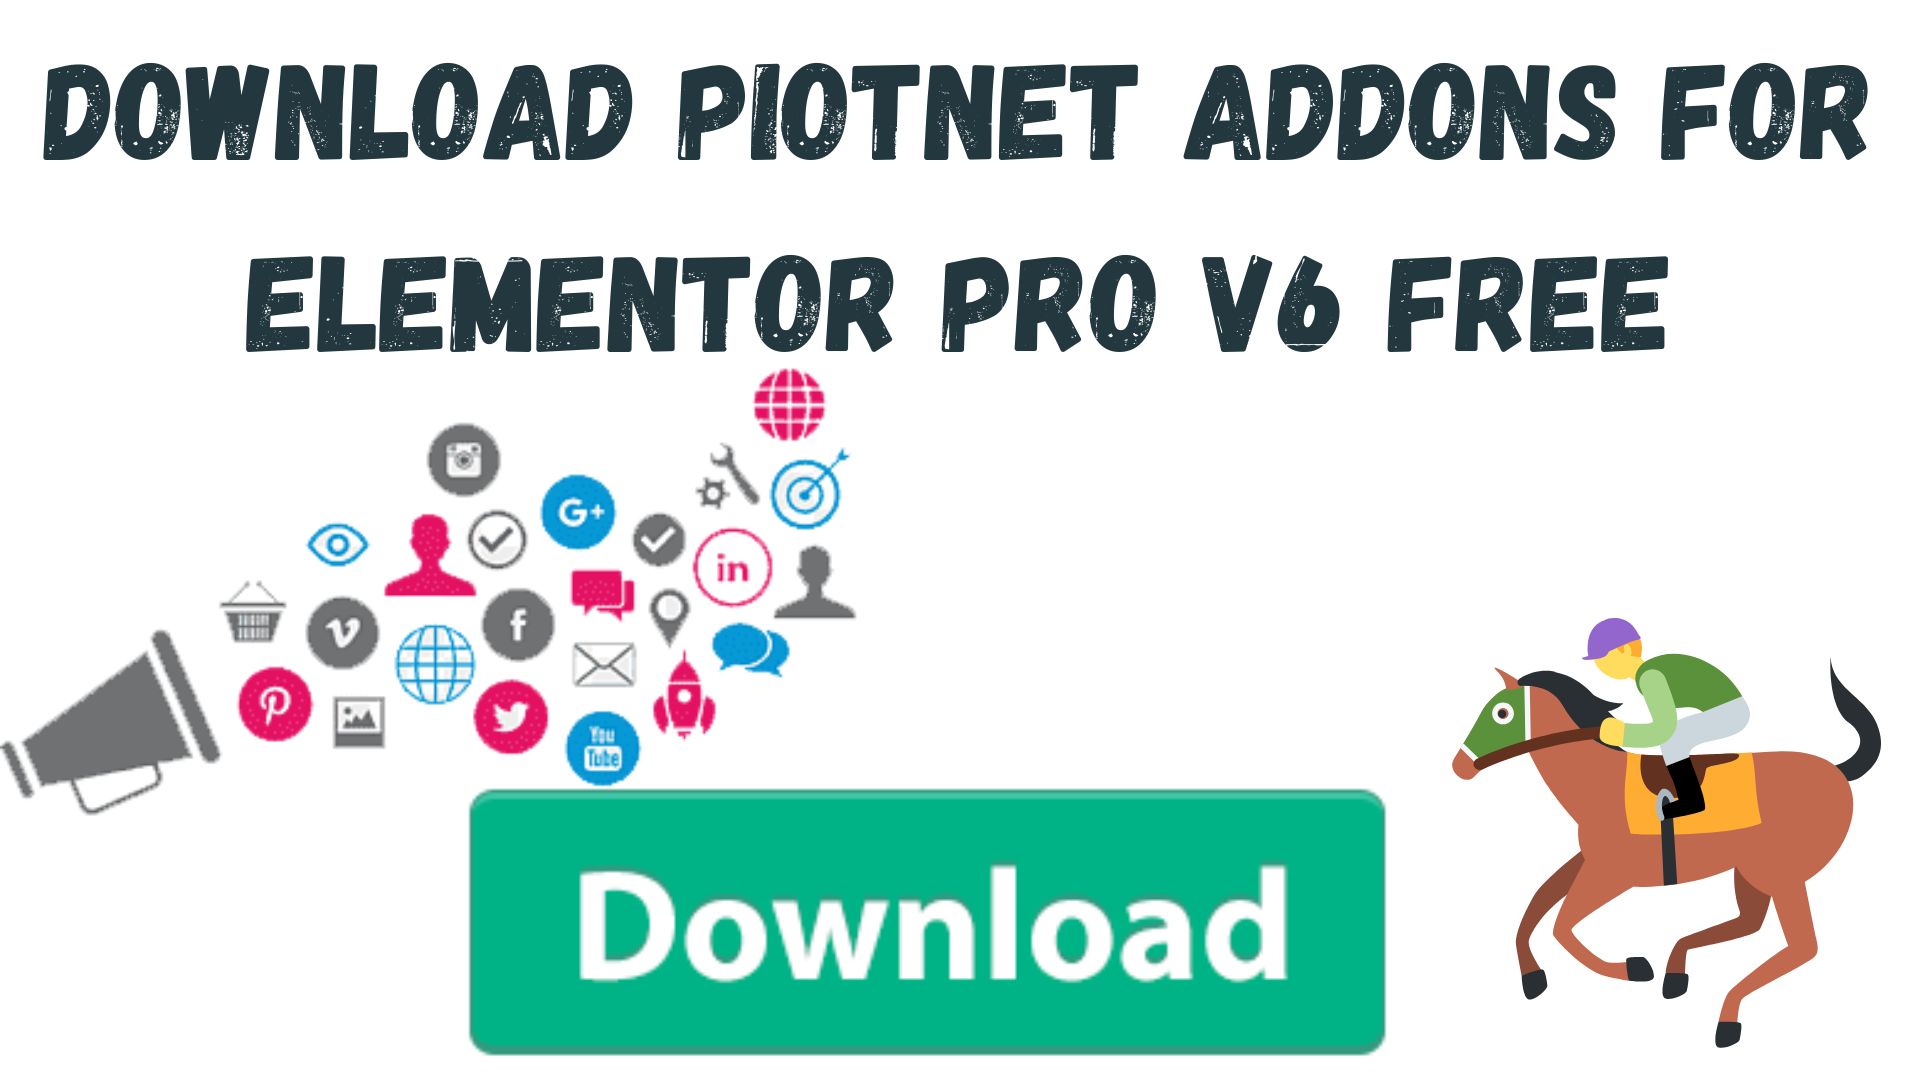 Download piotnet addons for elementor pro v6 free